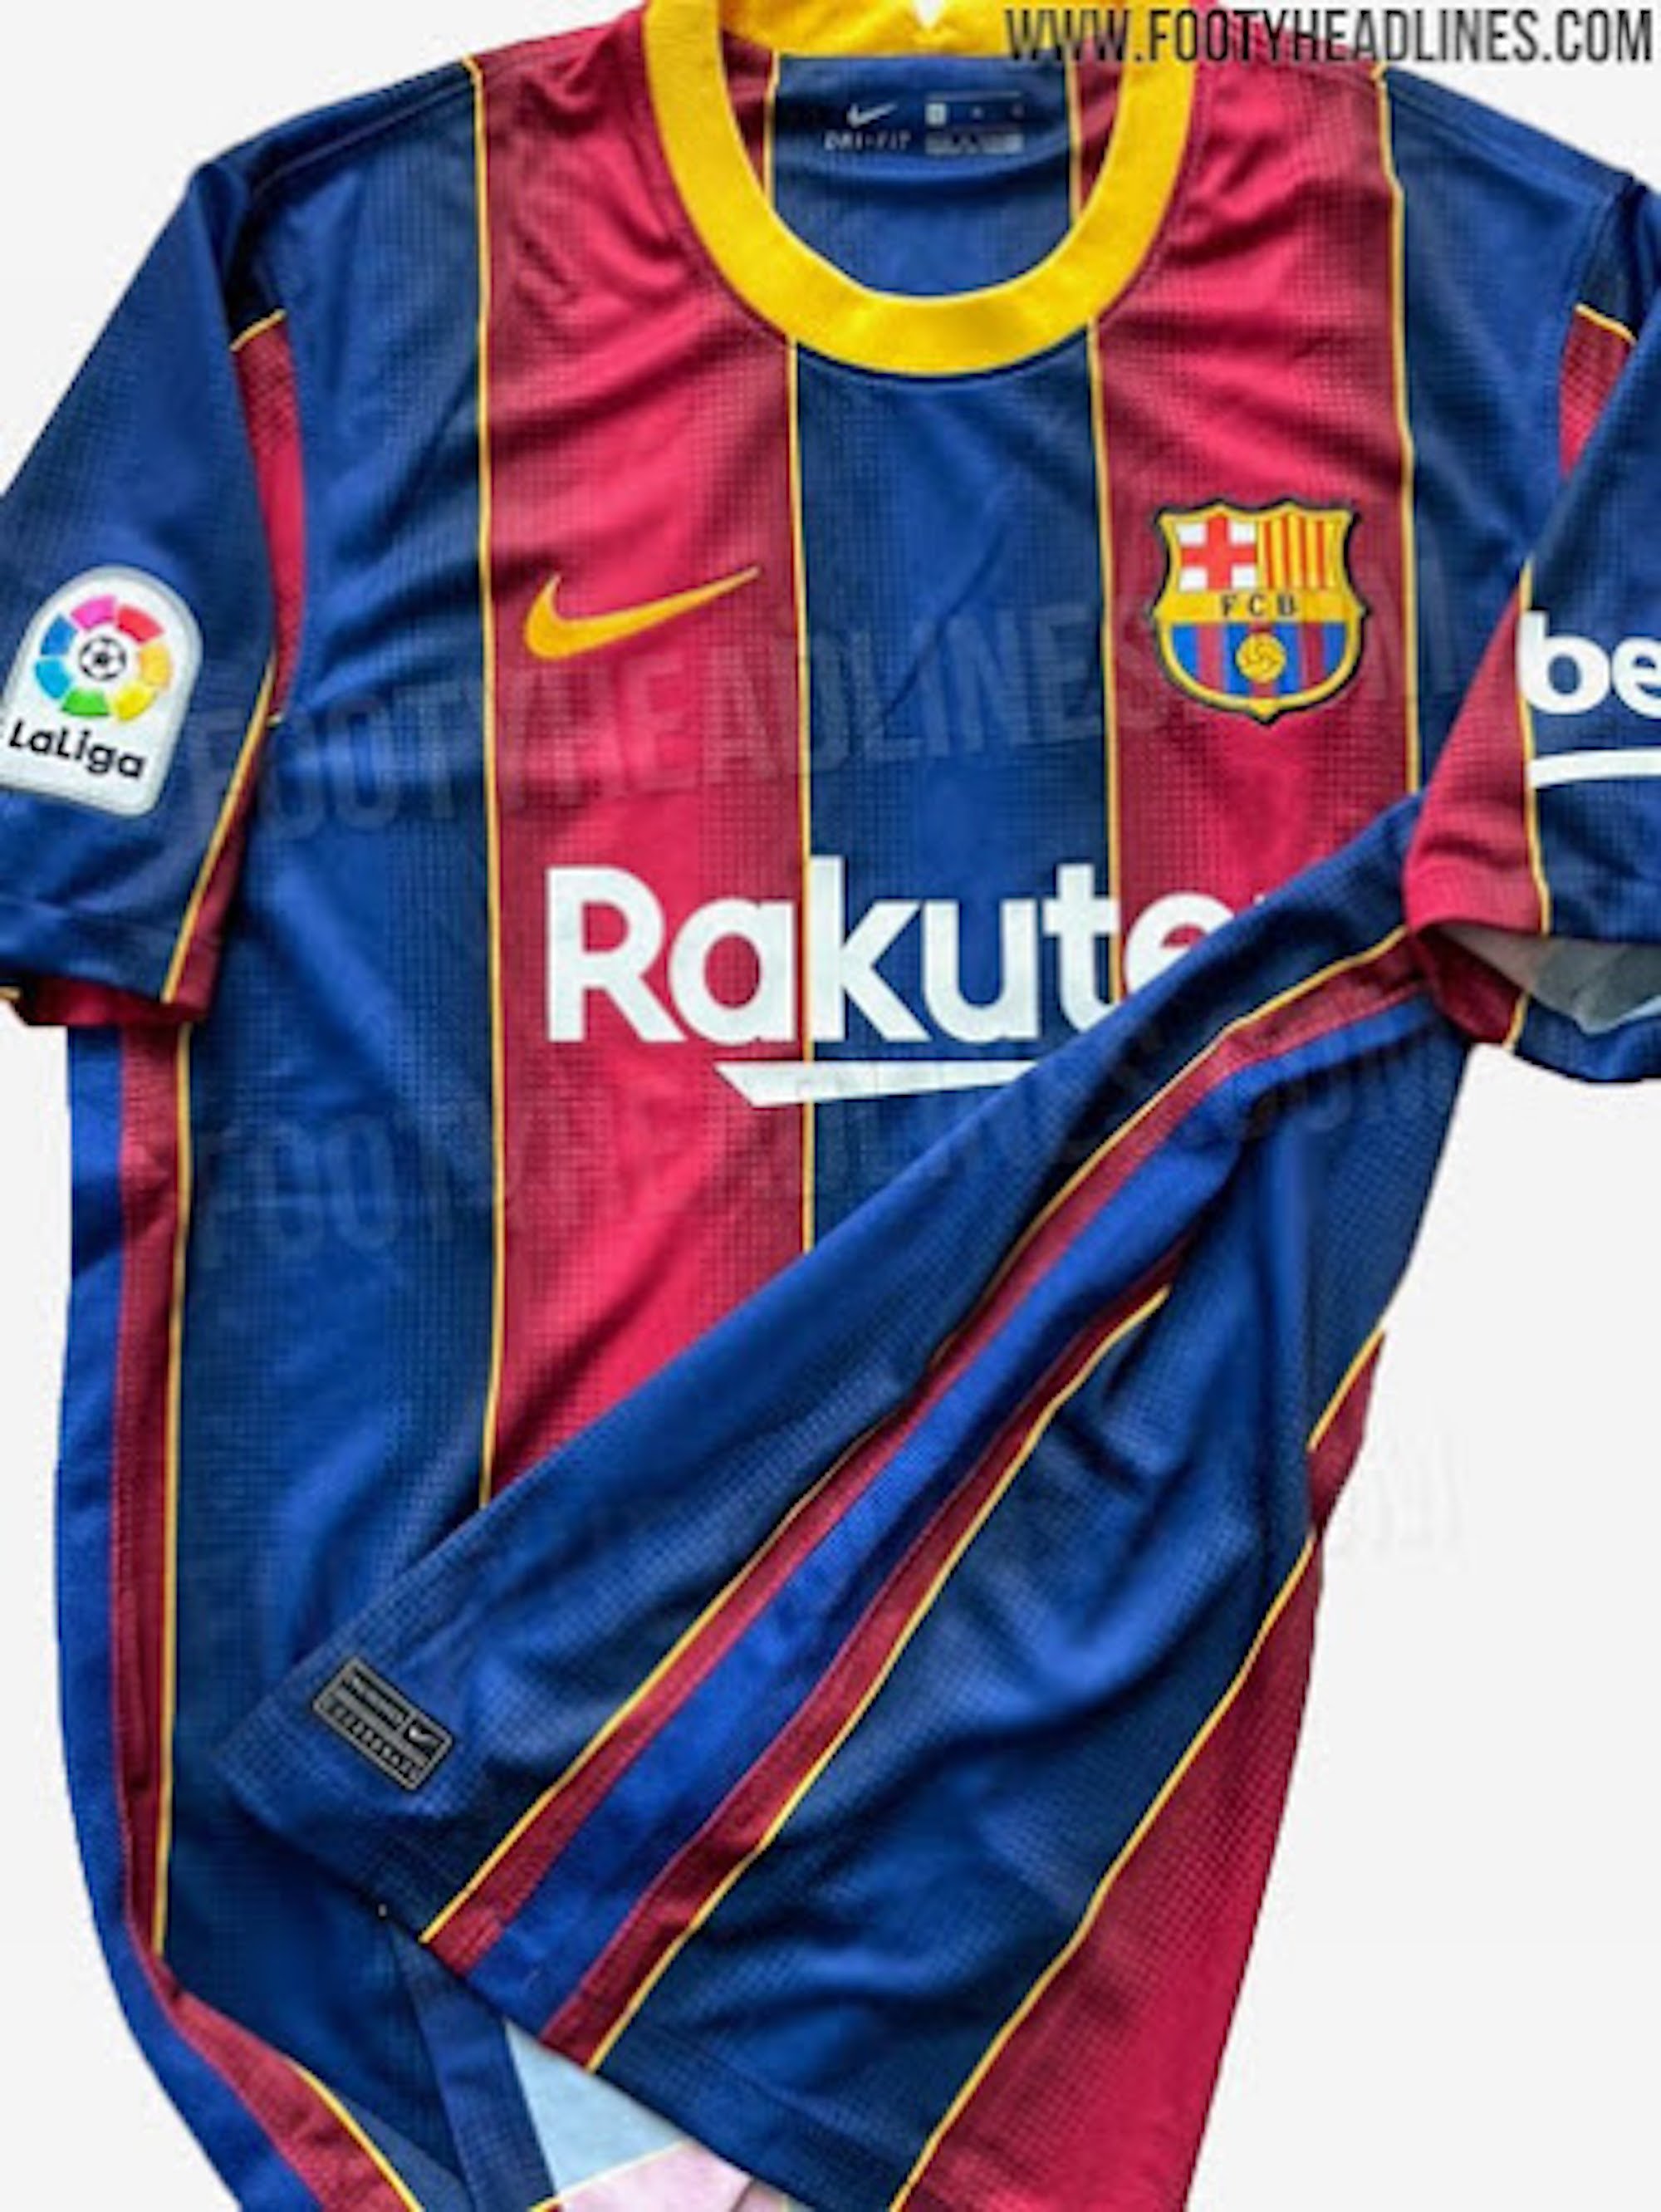 El Barça ja ven la nova samarreta quan encara no l'ha fet oficial